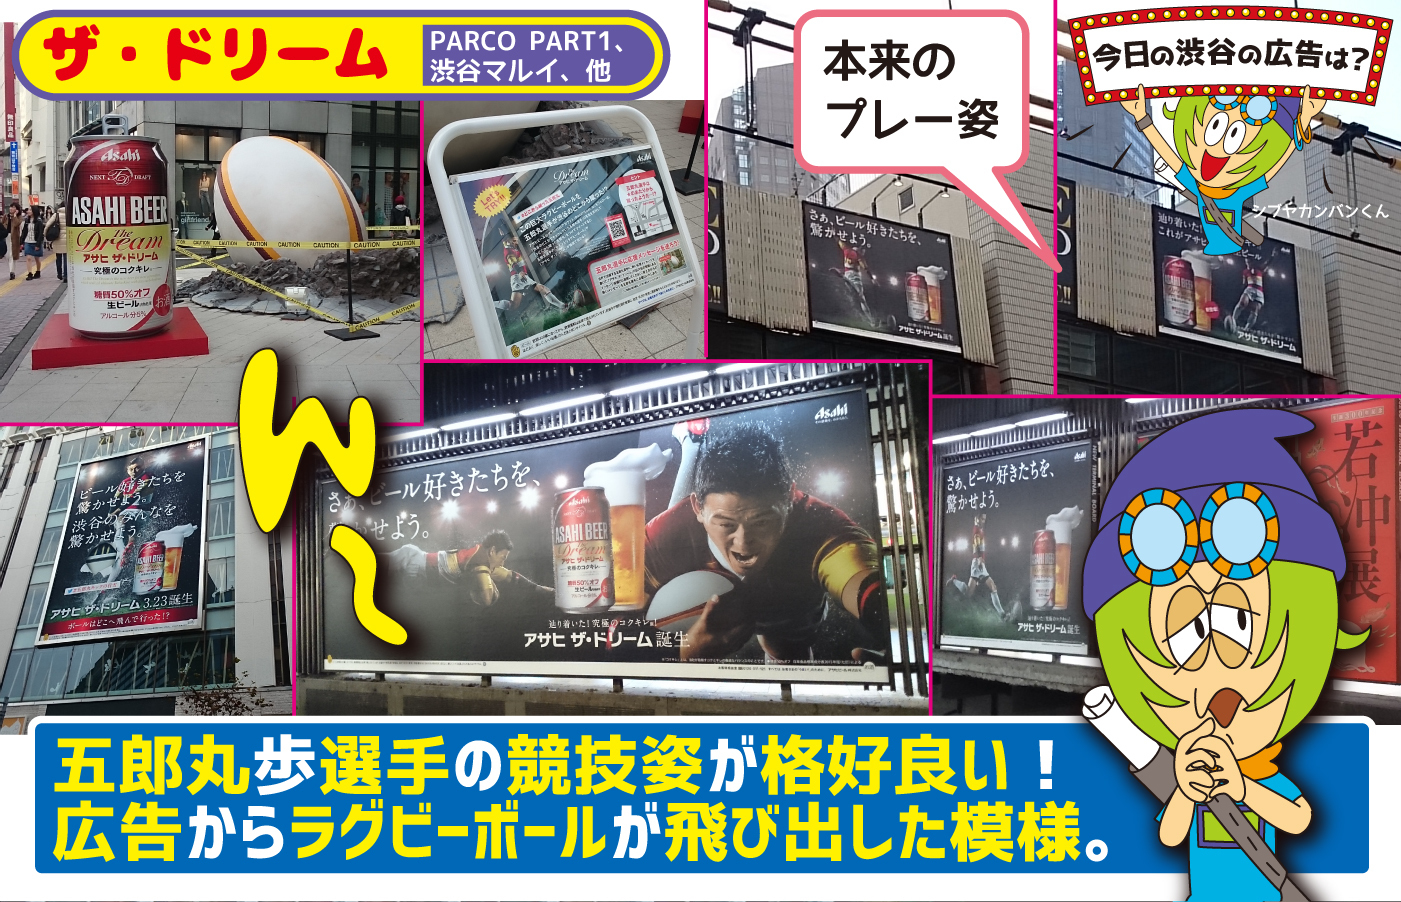 ザ ドリーム 五郎丸歩選手の競技姿が格好良い 広告からラグビーボールが飛び出した模様 今日の渋谷の広告は 看板 ポスター デジタル 車